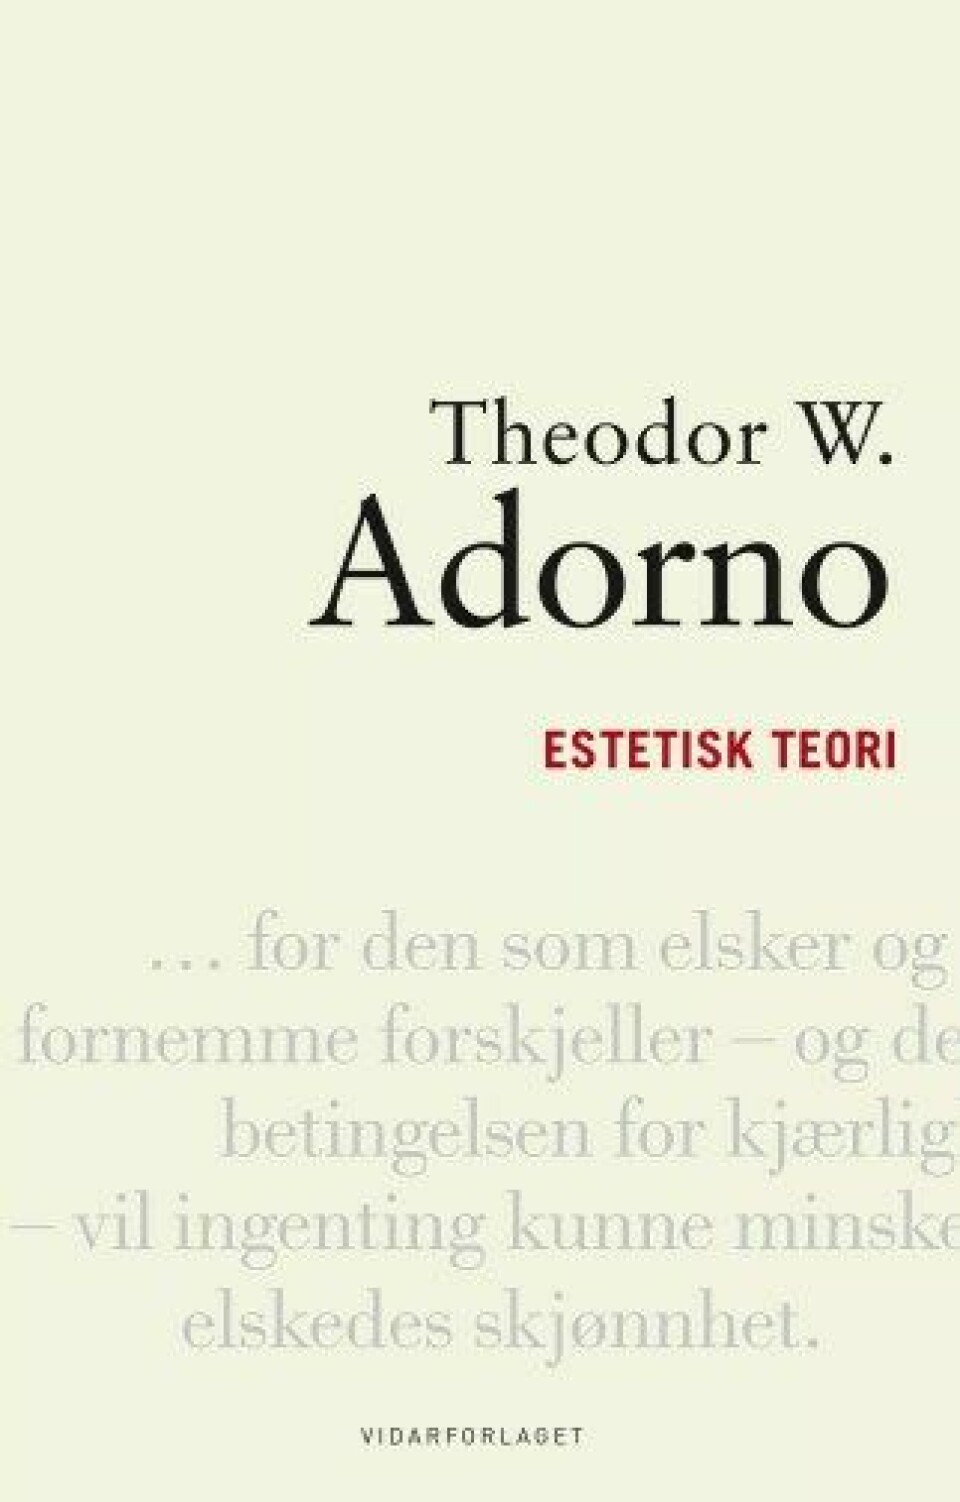 Theodor W. Adorno i norsk drekt, nyutgave av Estetisk teori på Vidaforlaget i 2021 [1998] oversatt av Arild Linneberg.